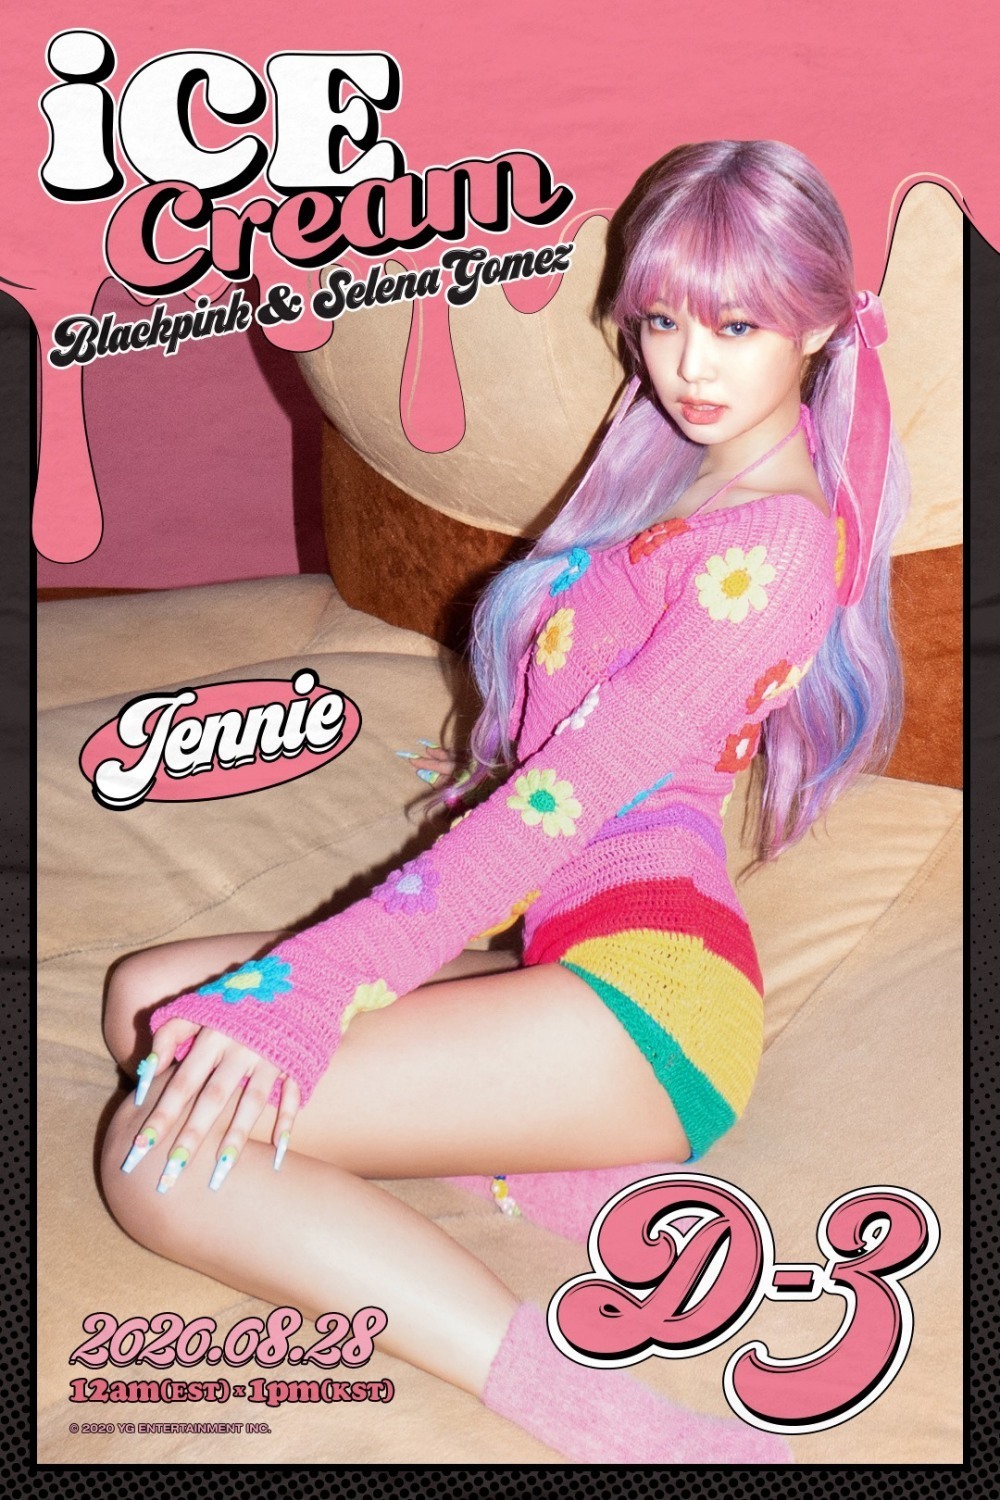  
Poster mới nhất của Ice Cream với sự xuất hiện của Jennie (Ảnh: YG)